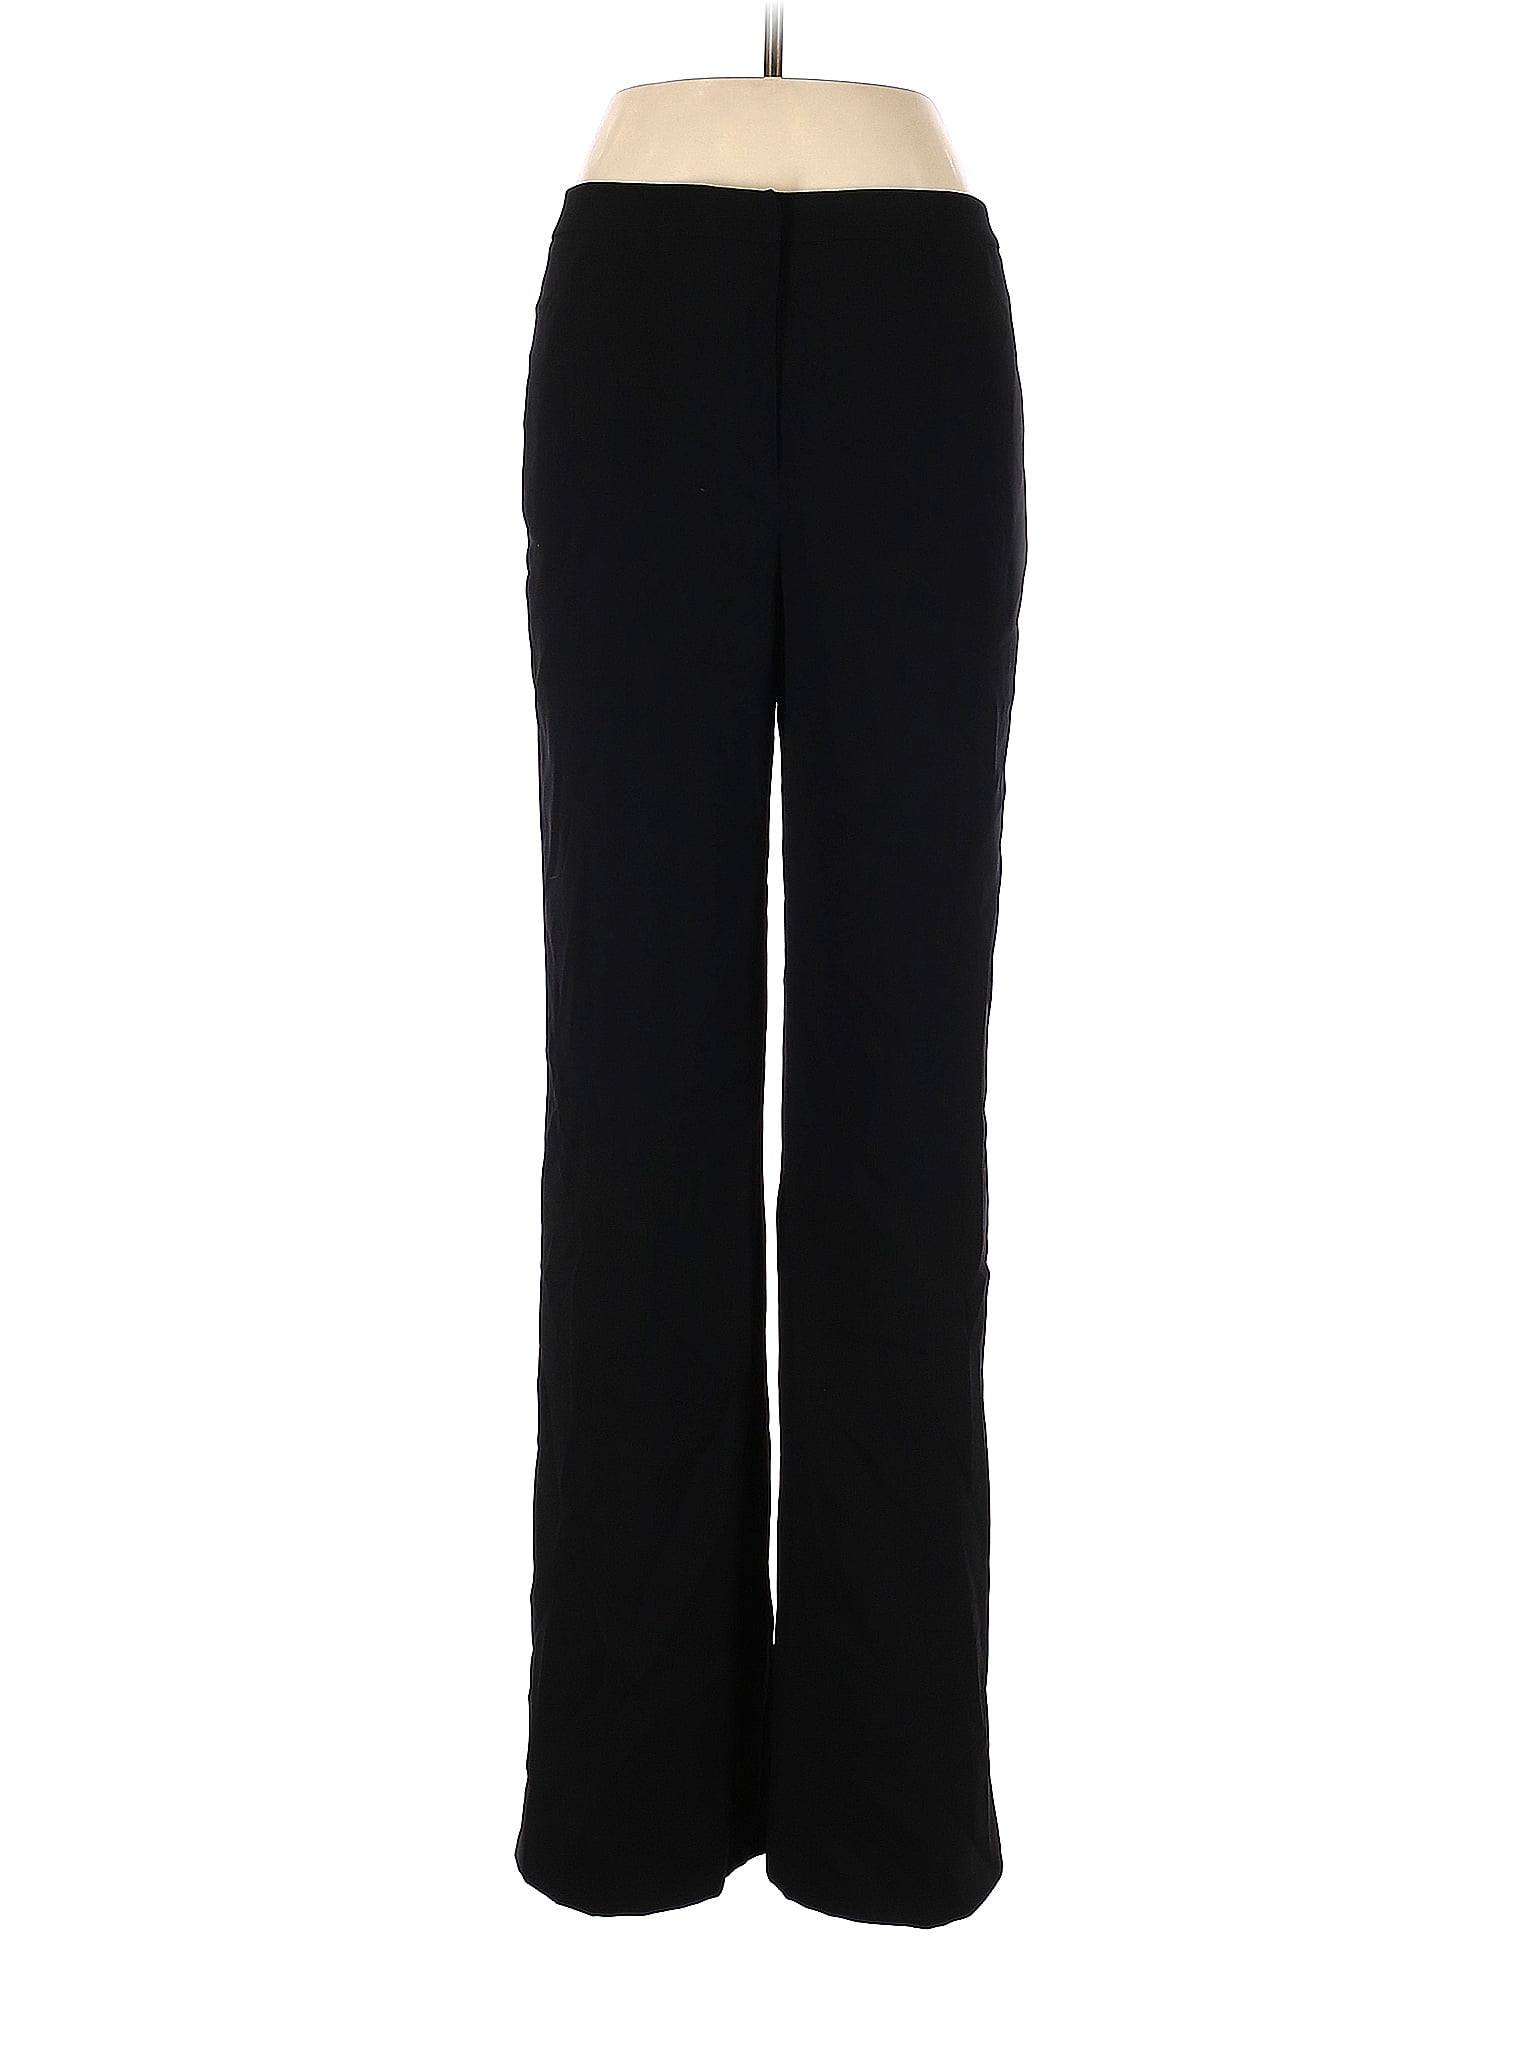 Unbranded 100% Polyester Black Dress Pants Size 8 - 68% off | thredUP